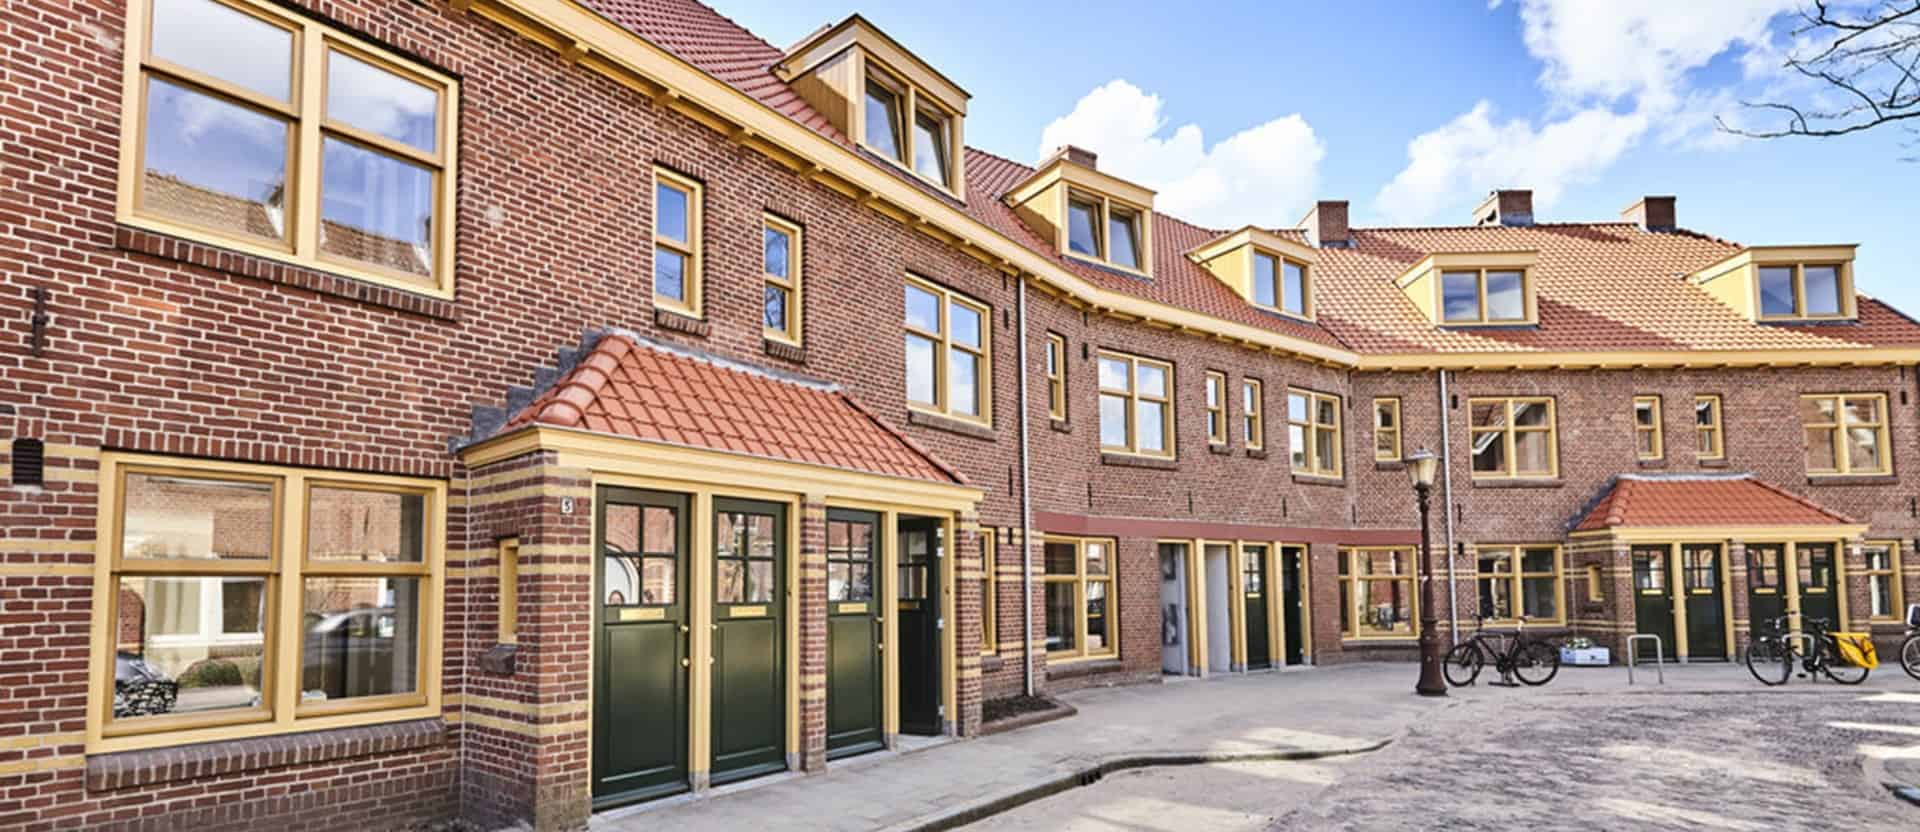 Van der Pek buurt in Amsterdam 2560x832 1